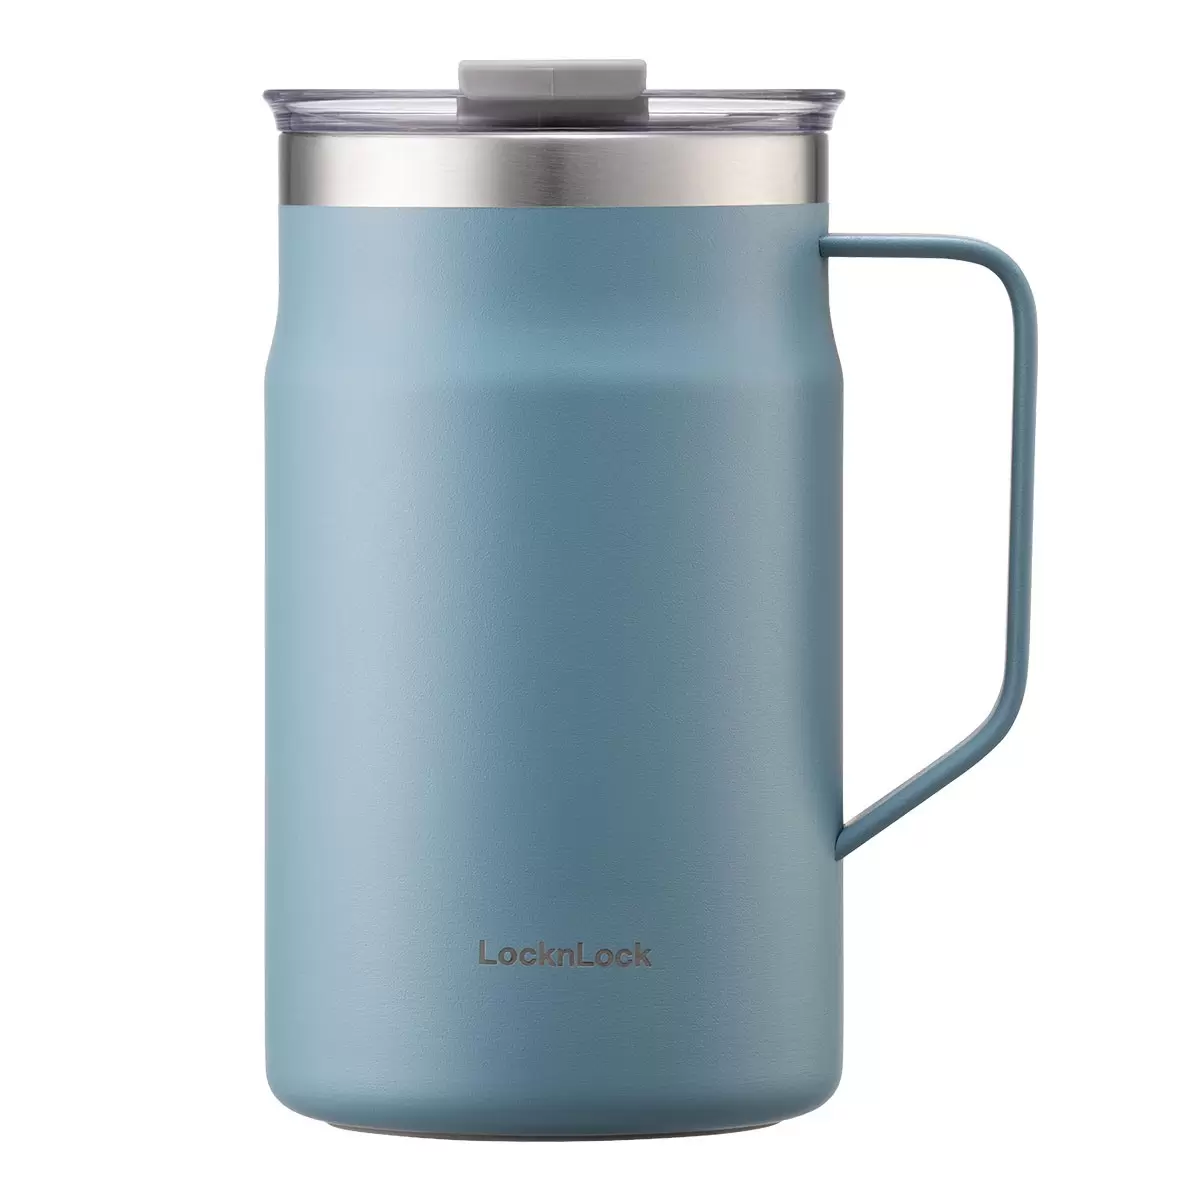 LocknLock 都會馬克咖啡杯 600毫升 X 2件組 丹寧藍 + 象牙白